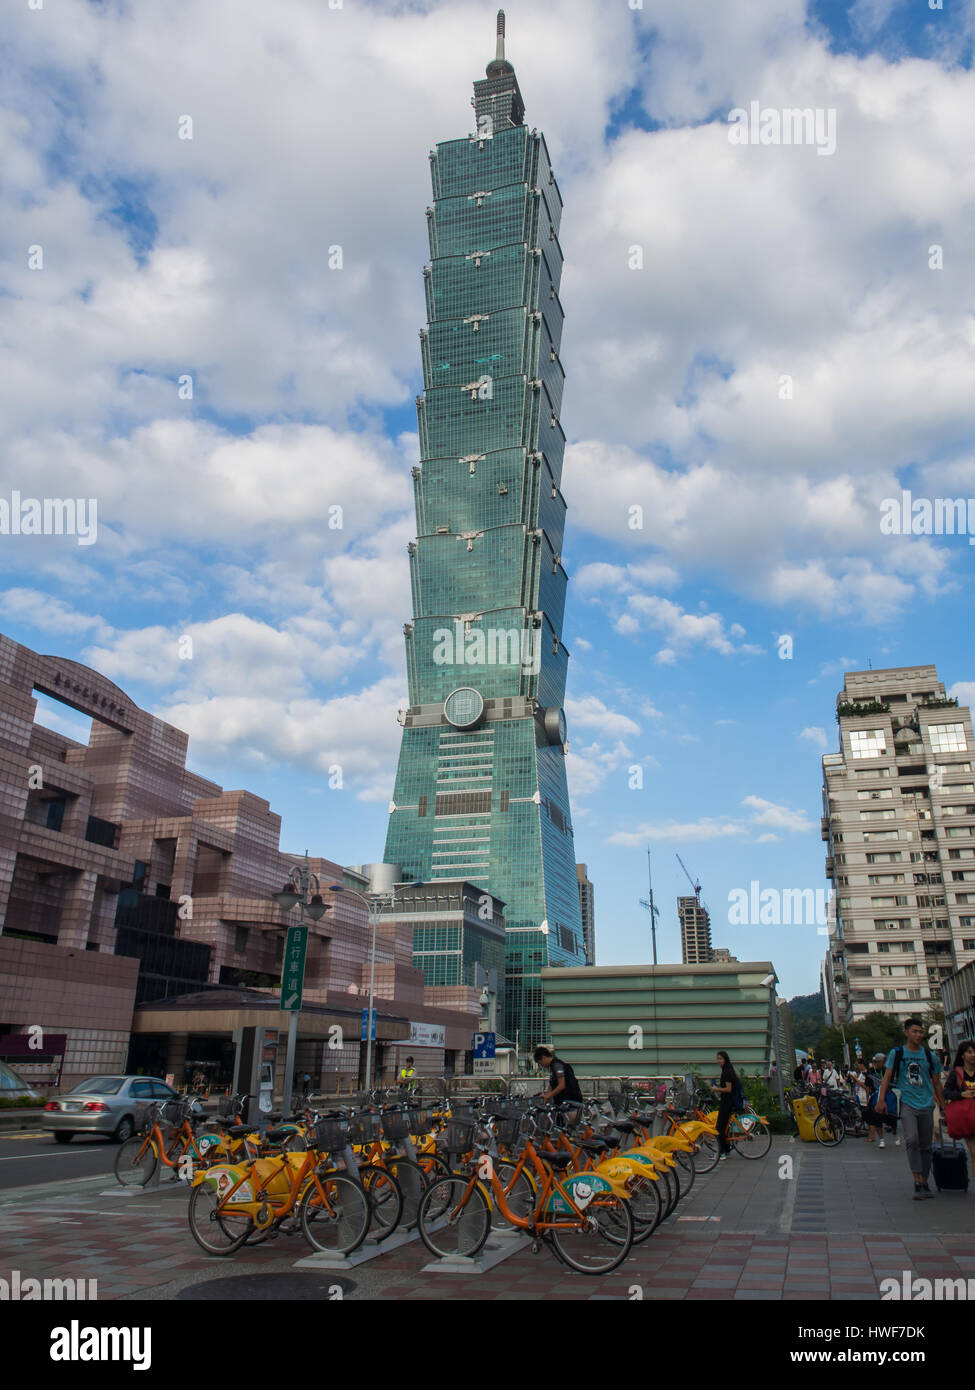 Taipeh, Taiwan - 2. Oktober 2016: Taipei 101. Landmark superhohe Wolkenkratzer in Xinyi District. Stockfoto